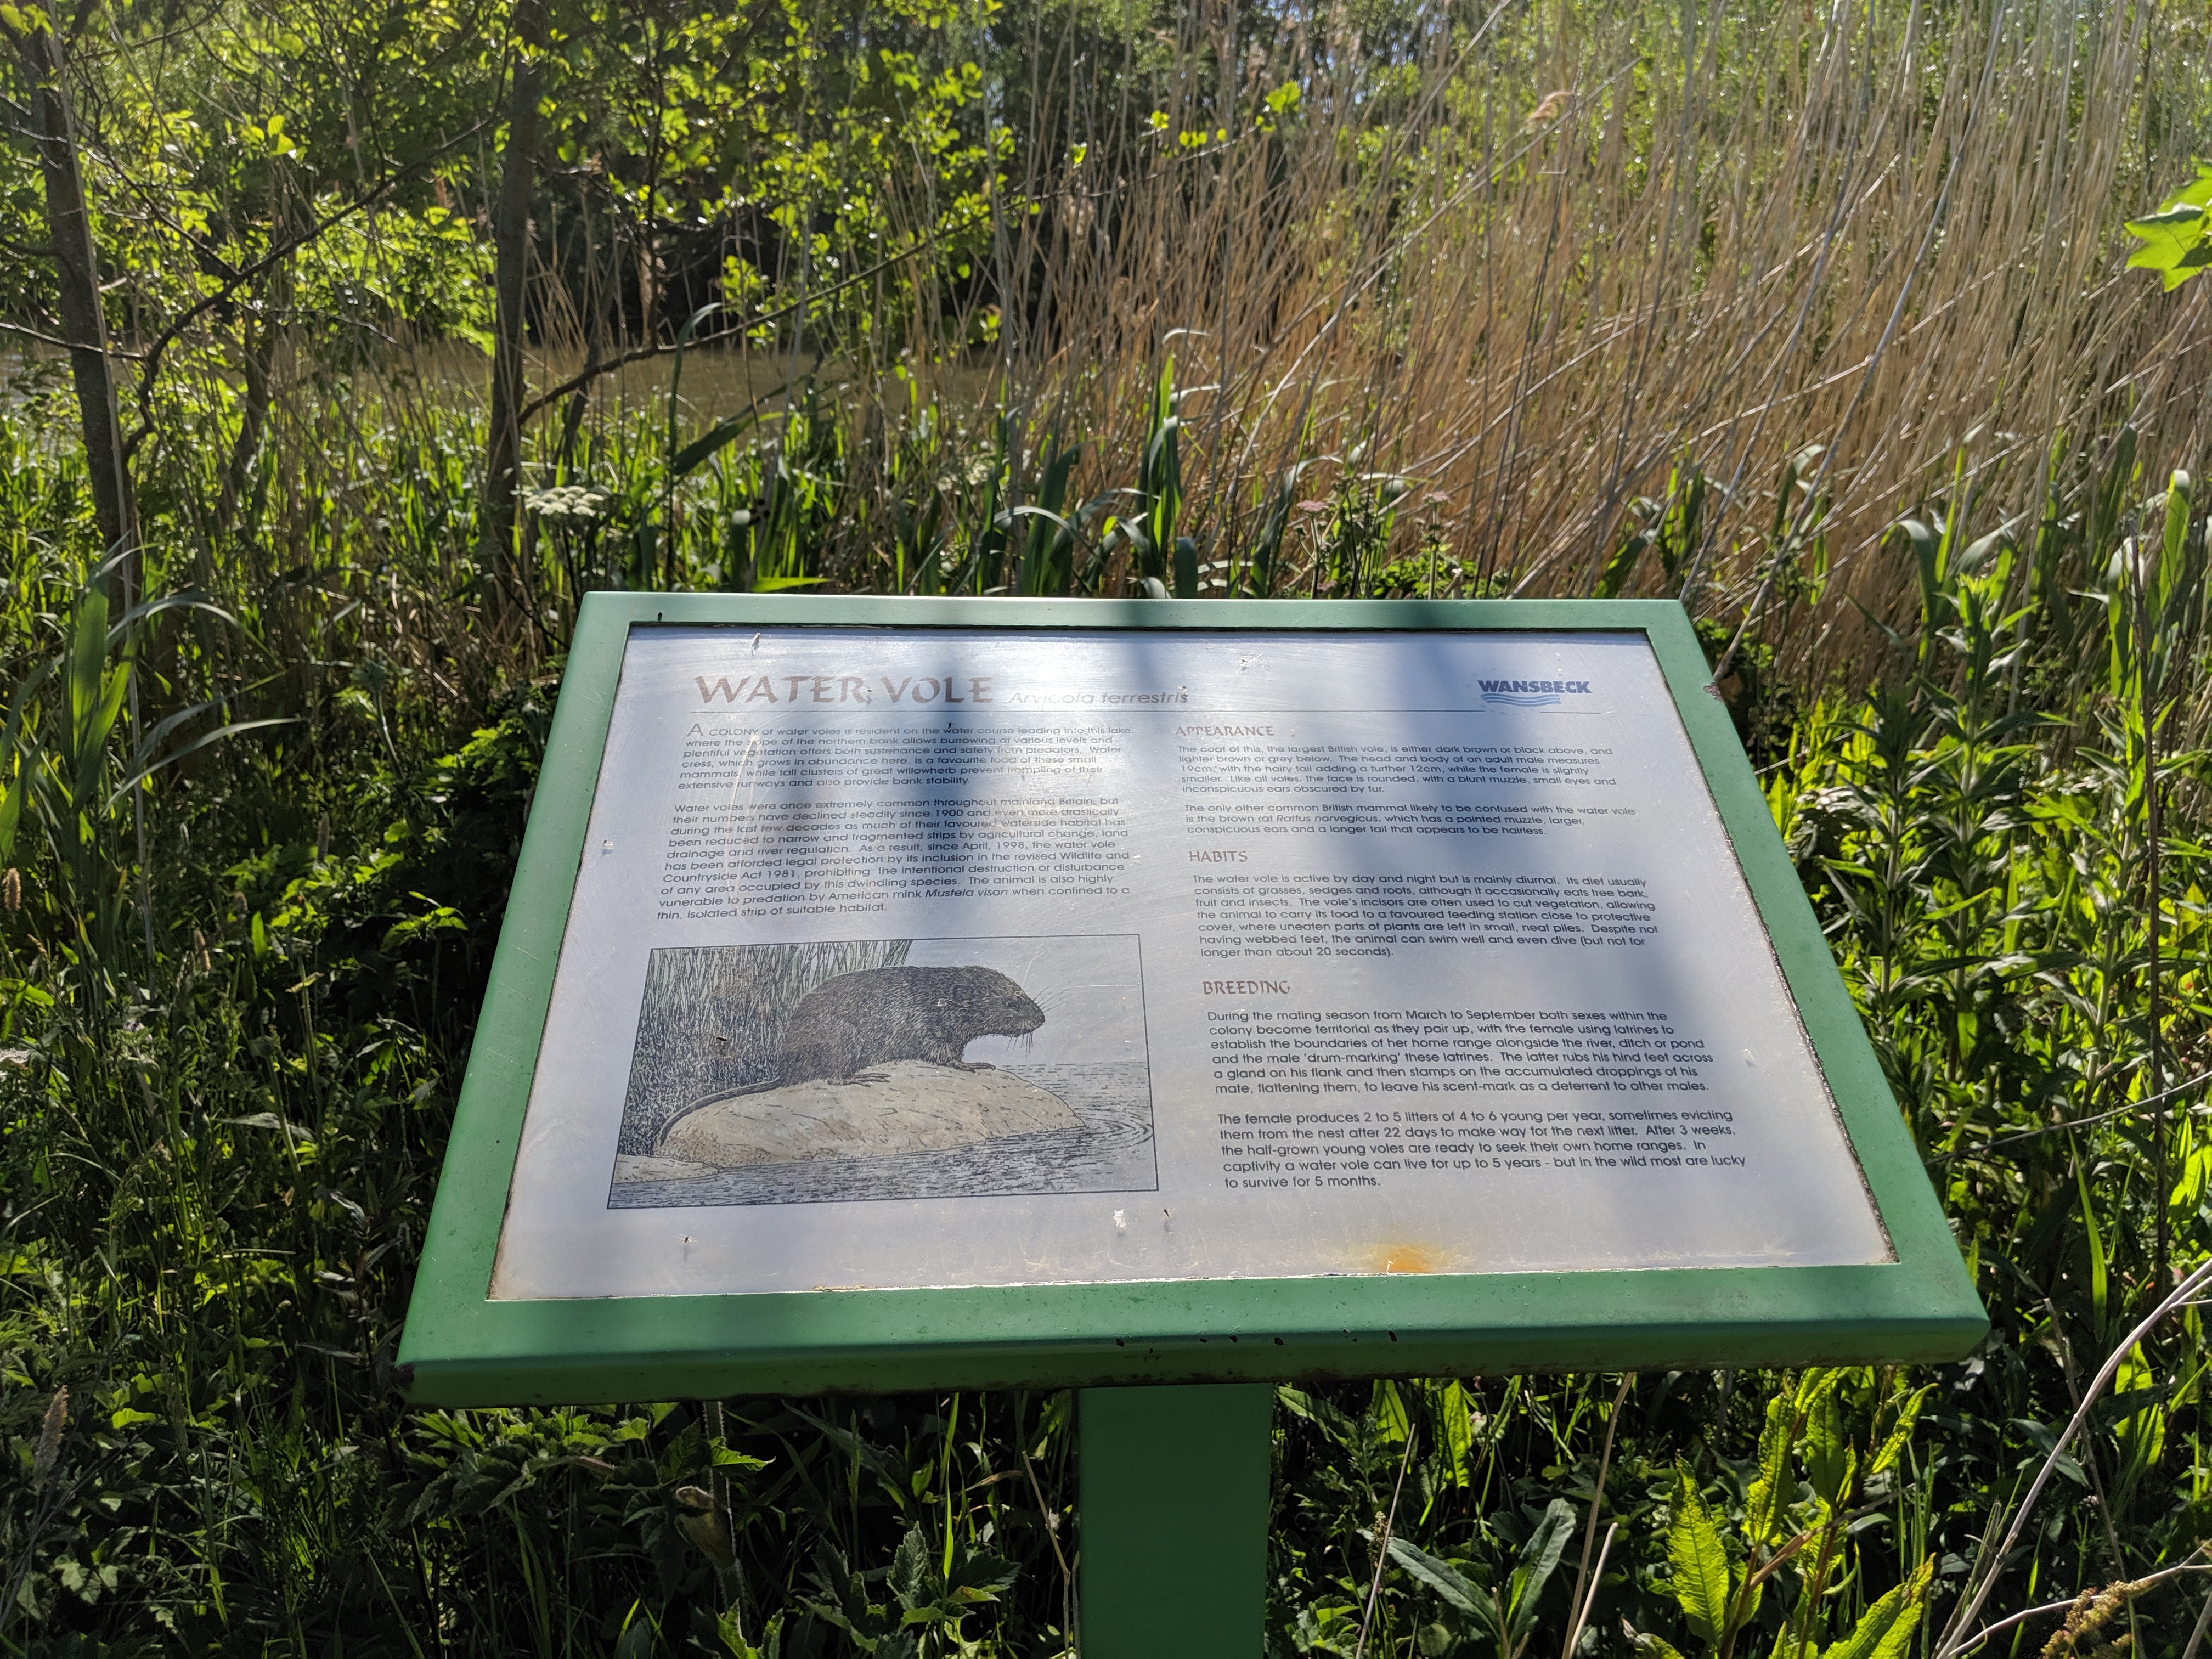 Queen Elizabeth II Country park walk water vole